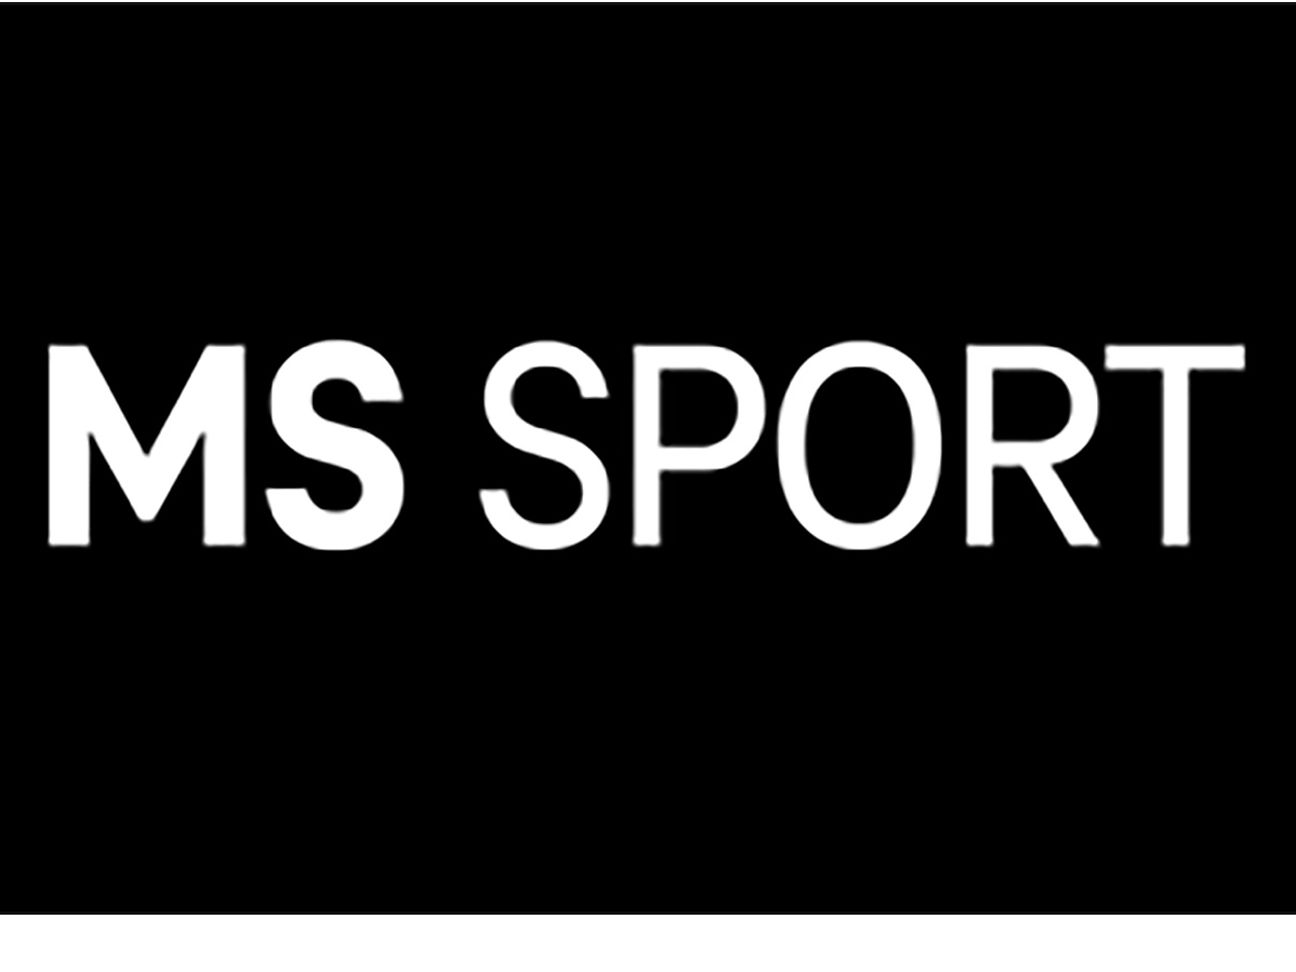 Neuer Sportkanal für alle MagentaTV Kunden Deutsche Telekom